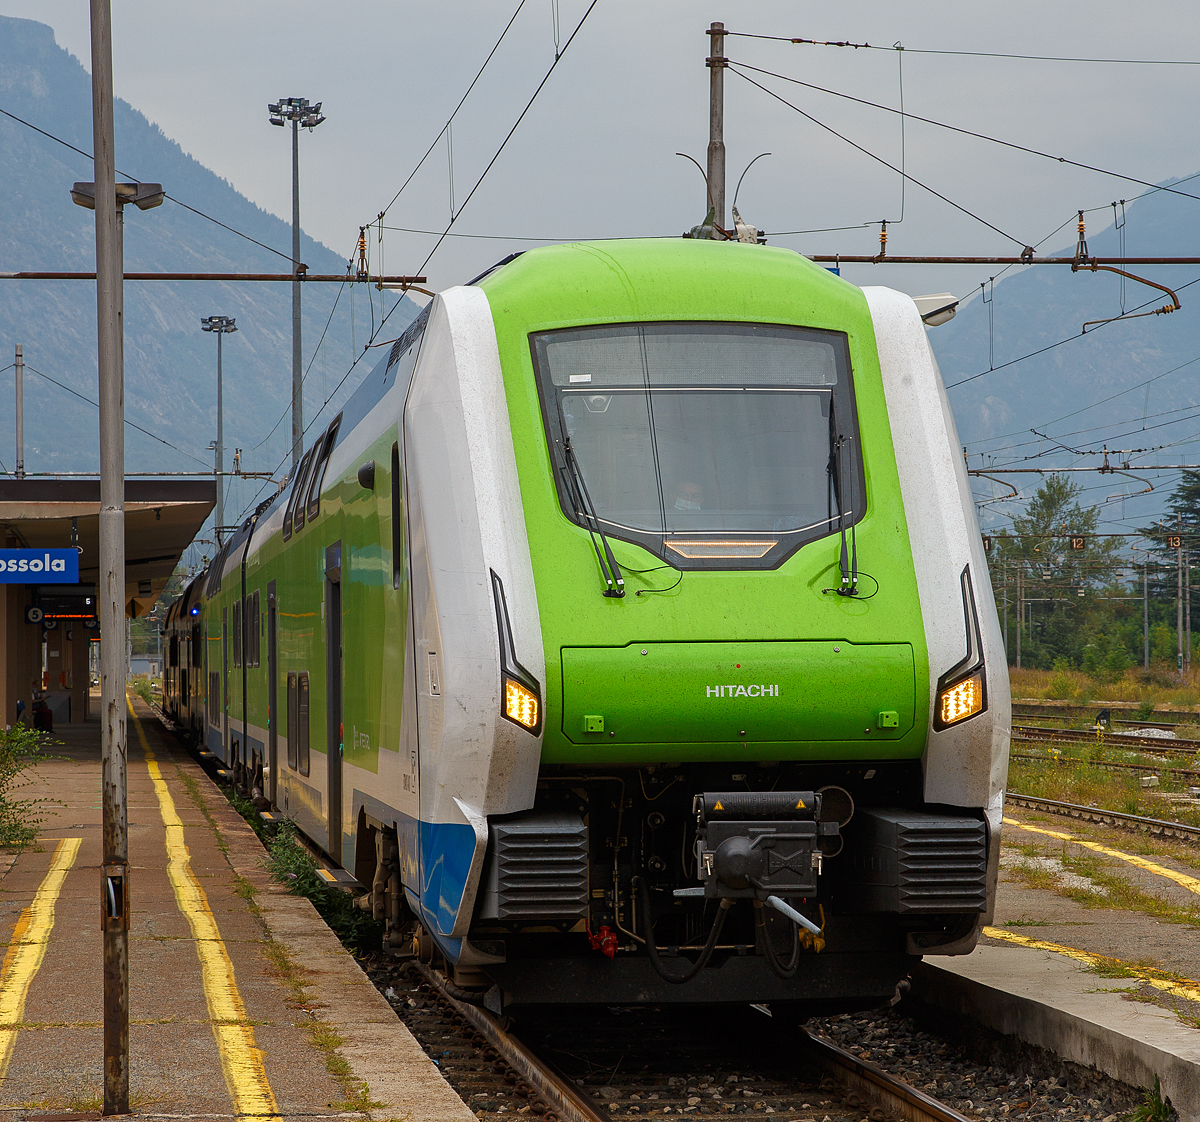 Nun sind auch schon die Hitachi “Rock”-Triebzüge (Hitachi Caravaggio) in Domodossola angekommen.....
Hier steht am 08.09.2021 im Bahnhof Domodossola der vierteilige Rock – ETR 421-021 der Trenord (Tn). 
